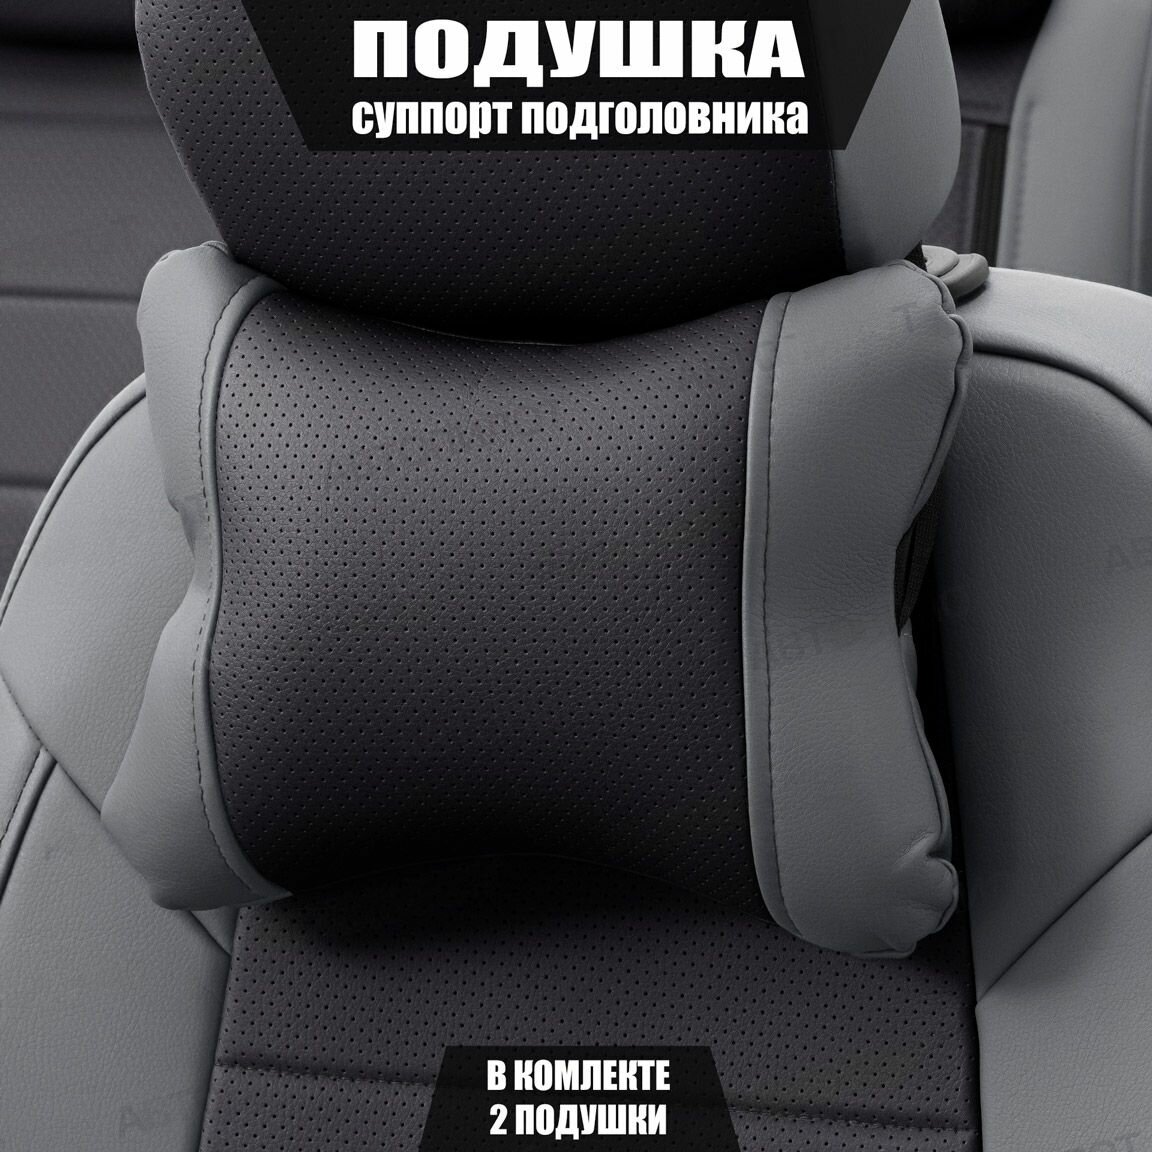 Подушки под шею (суппорт подголовника) для Сузуки Гранд Витара (2005 - 2008) внедорожник 5 дверей / Suzuki Grand Vitara, Экокожа, 2 подушки, Серый и черный